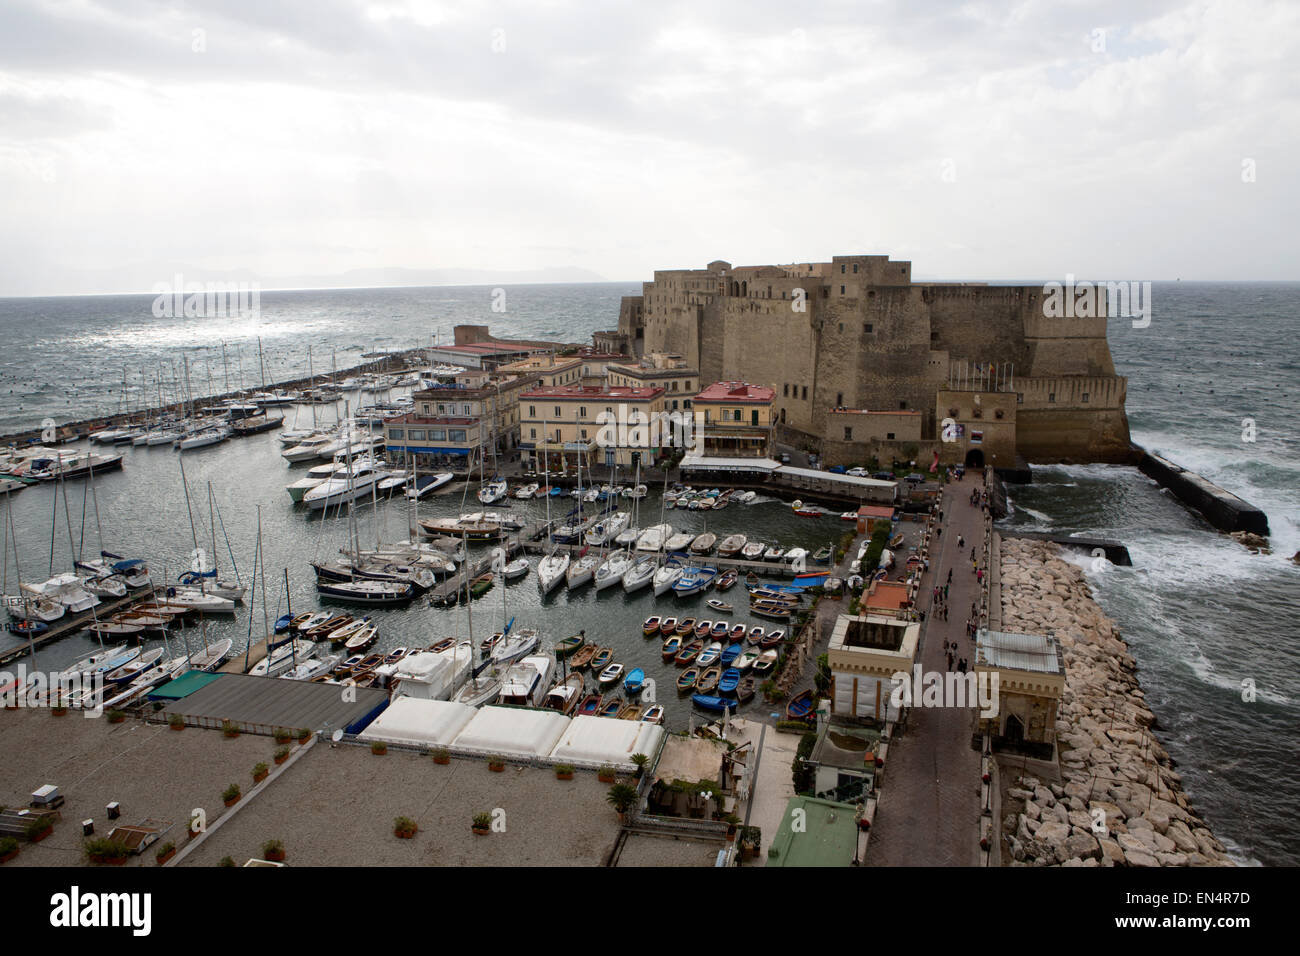 castle dell'ovo at borge mariani. It is a view from grand hotel vesuvio. Stock Photo